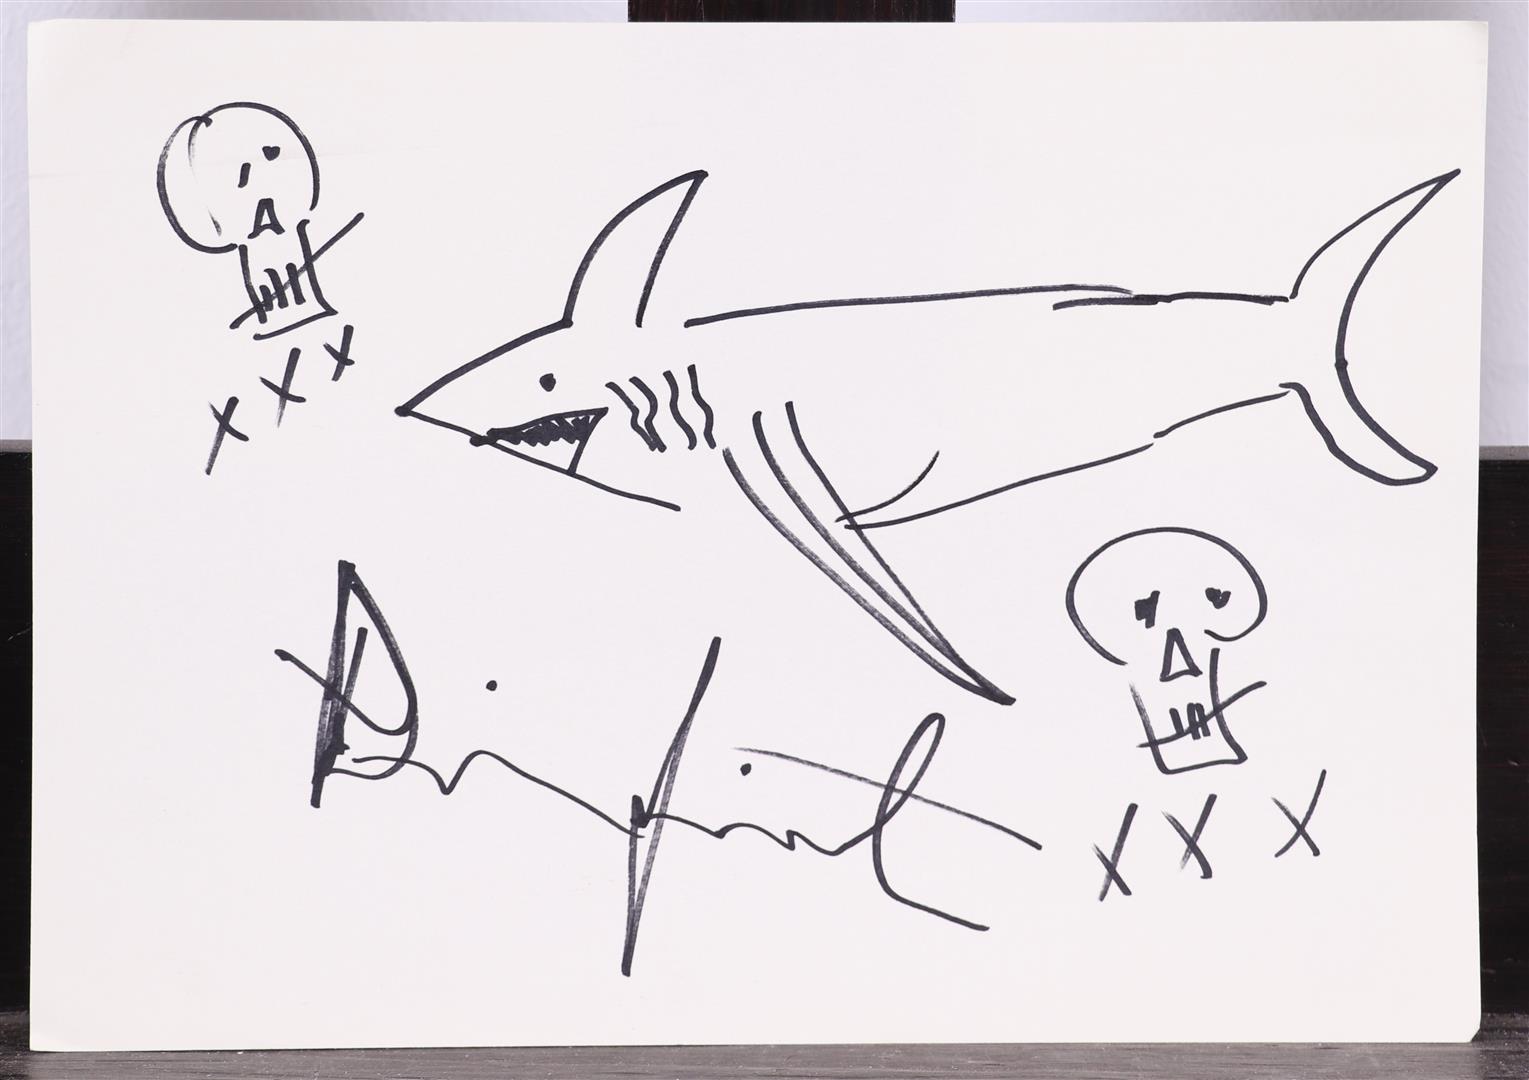 Damien Hirst (Bristol, UK 1955), (after), Shark, drawing in felt-tip pen depicting sharks